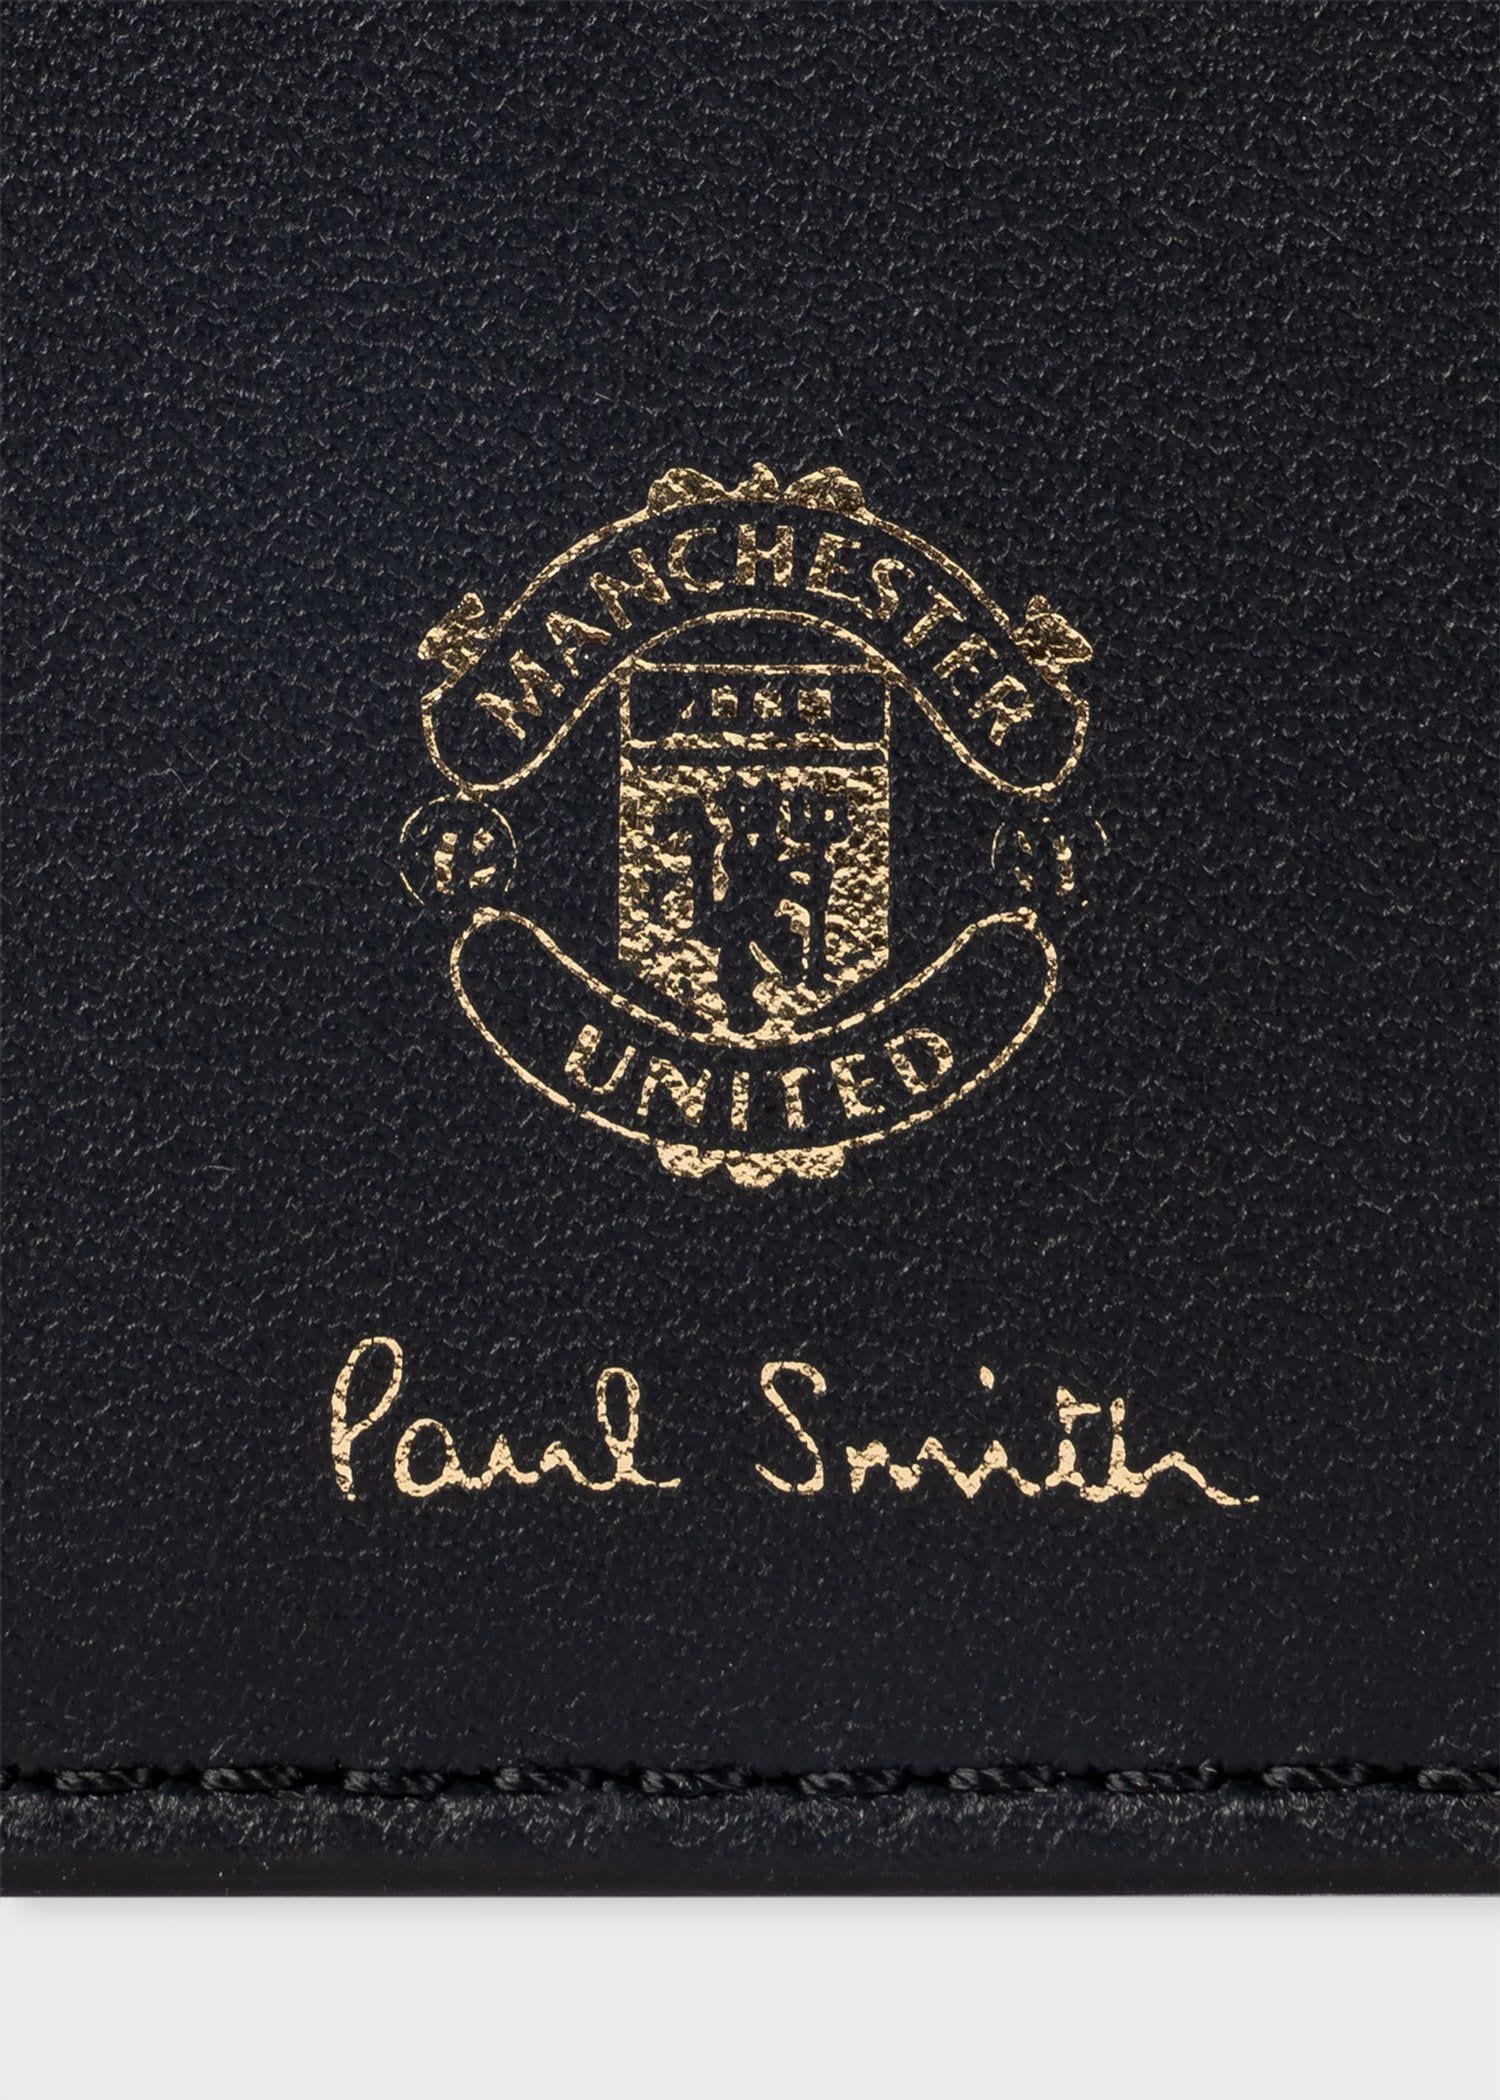 Paul Smith & Manchester United スタジアム 定期入れ